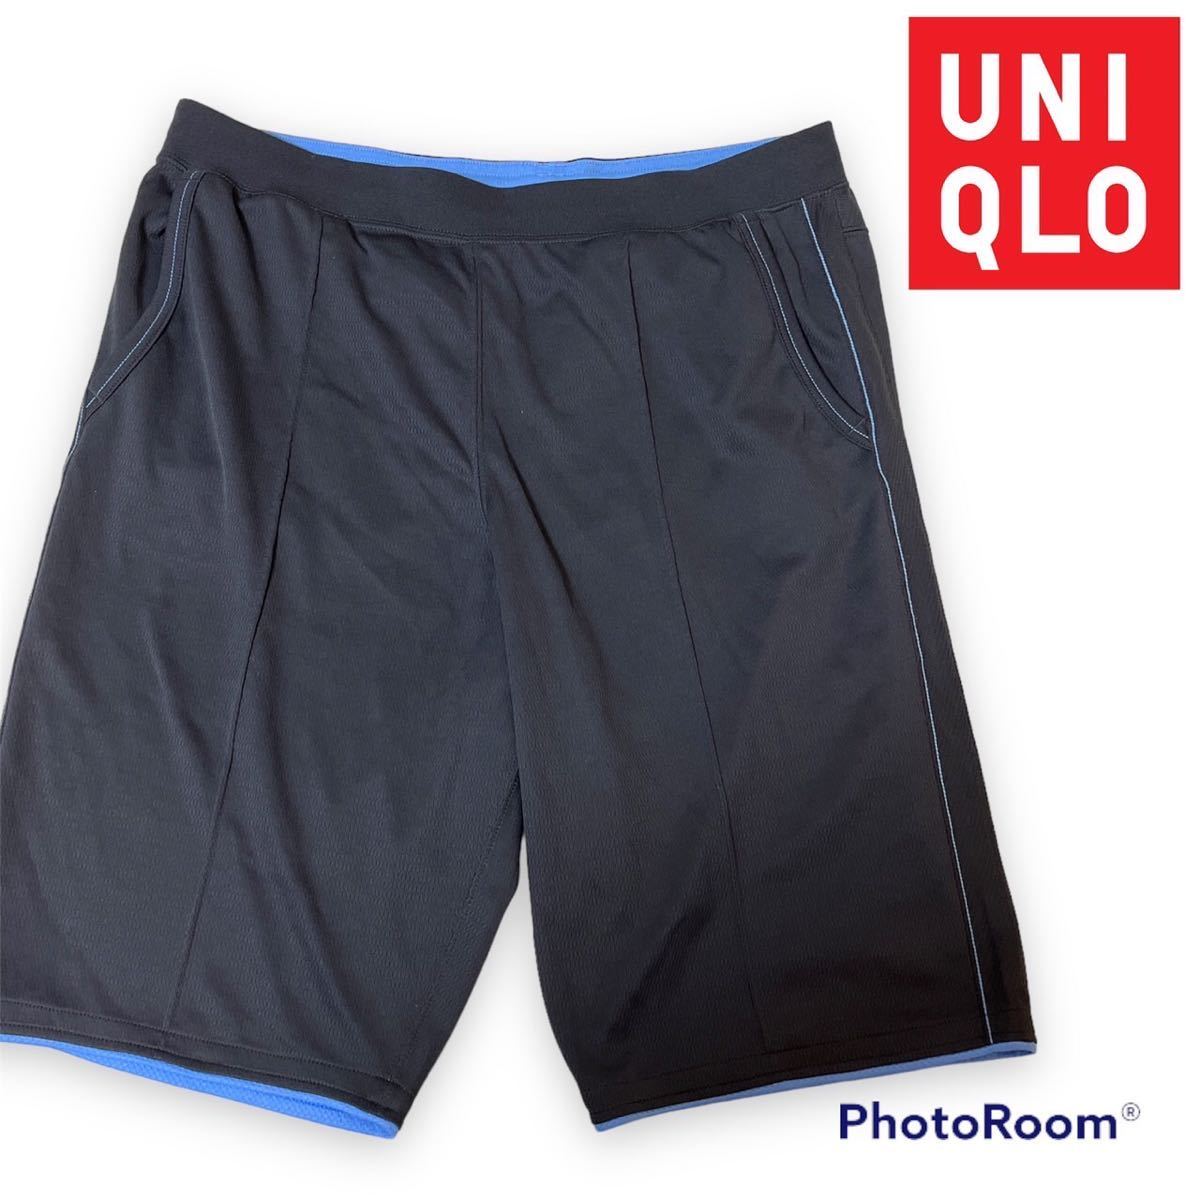 UNIQLO ユニクロ スポーツウェア ハーフパンツ ショートパンツ ジャージ パンツ ズボン 半ズボン メンズ L 部活 下 グレー 灰色 送料無料